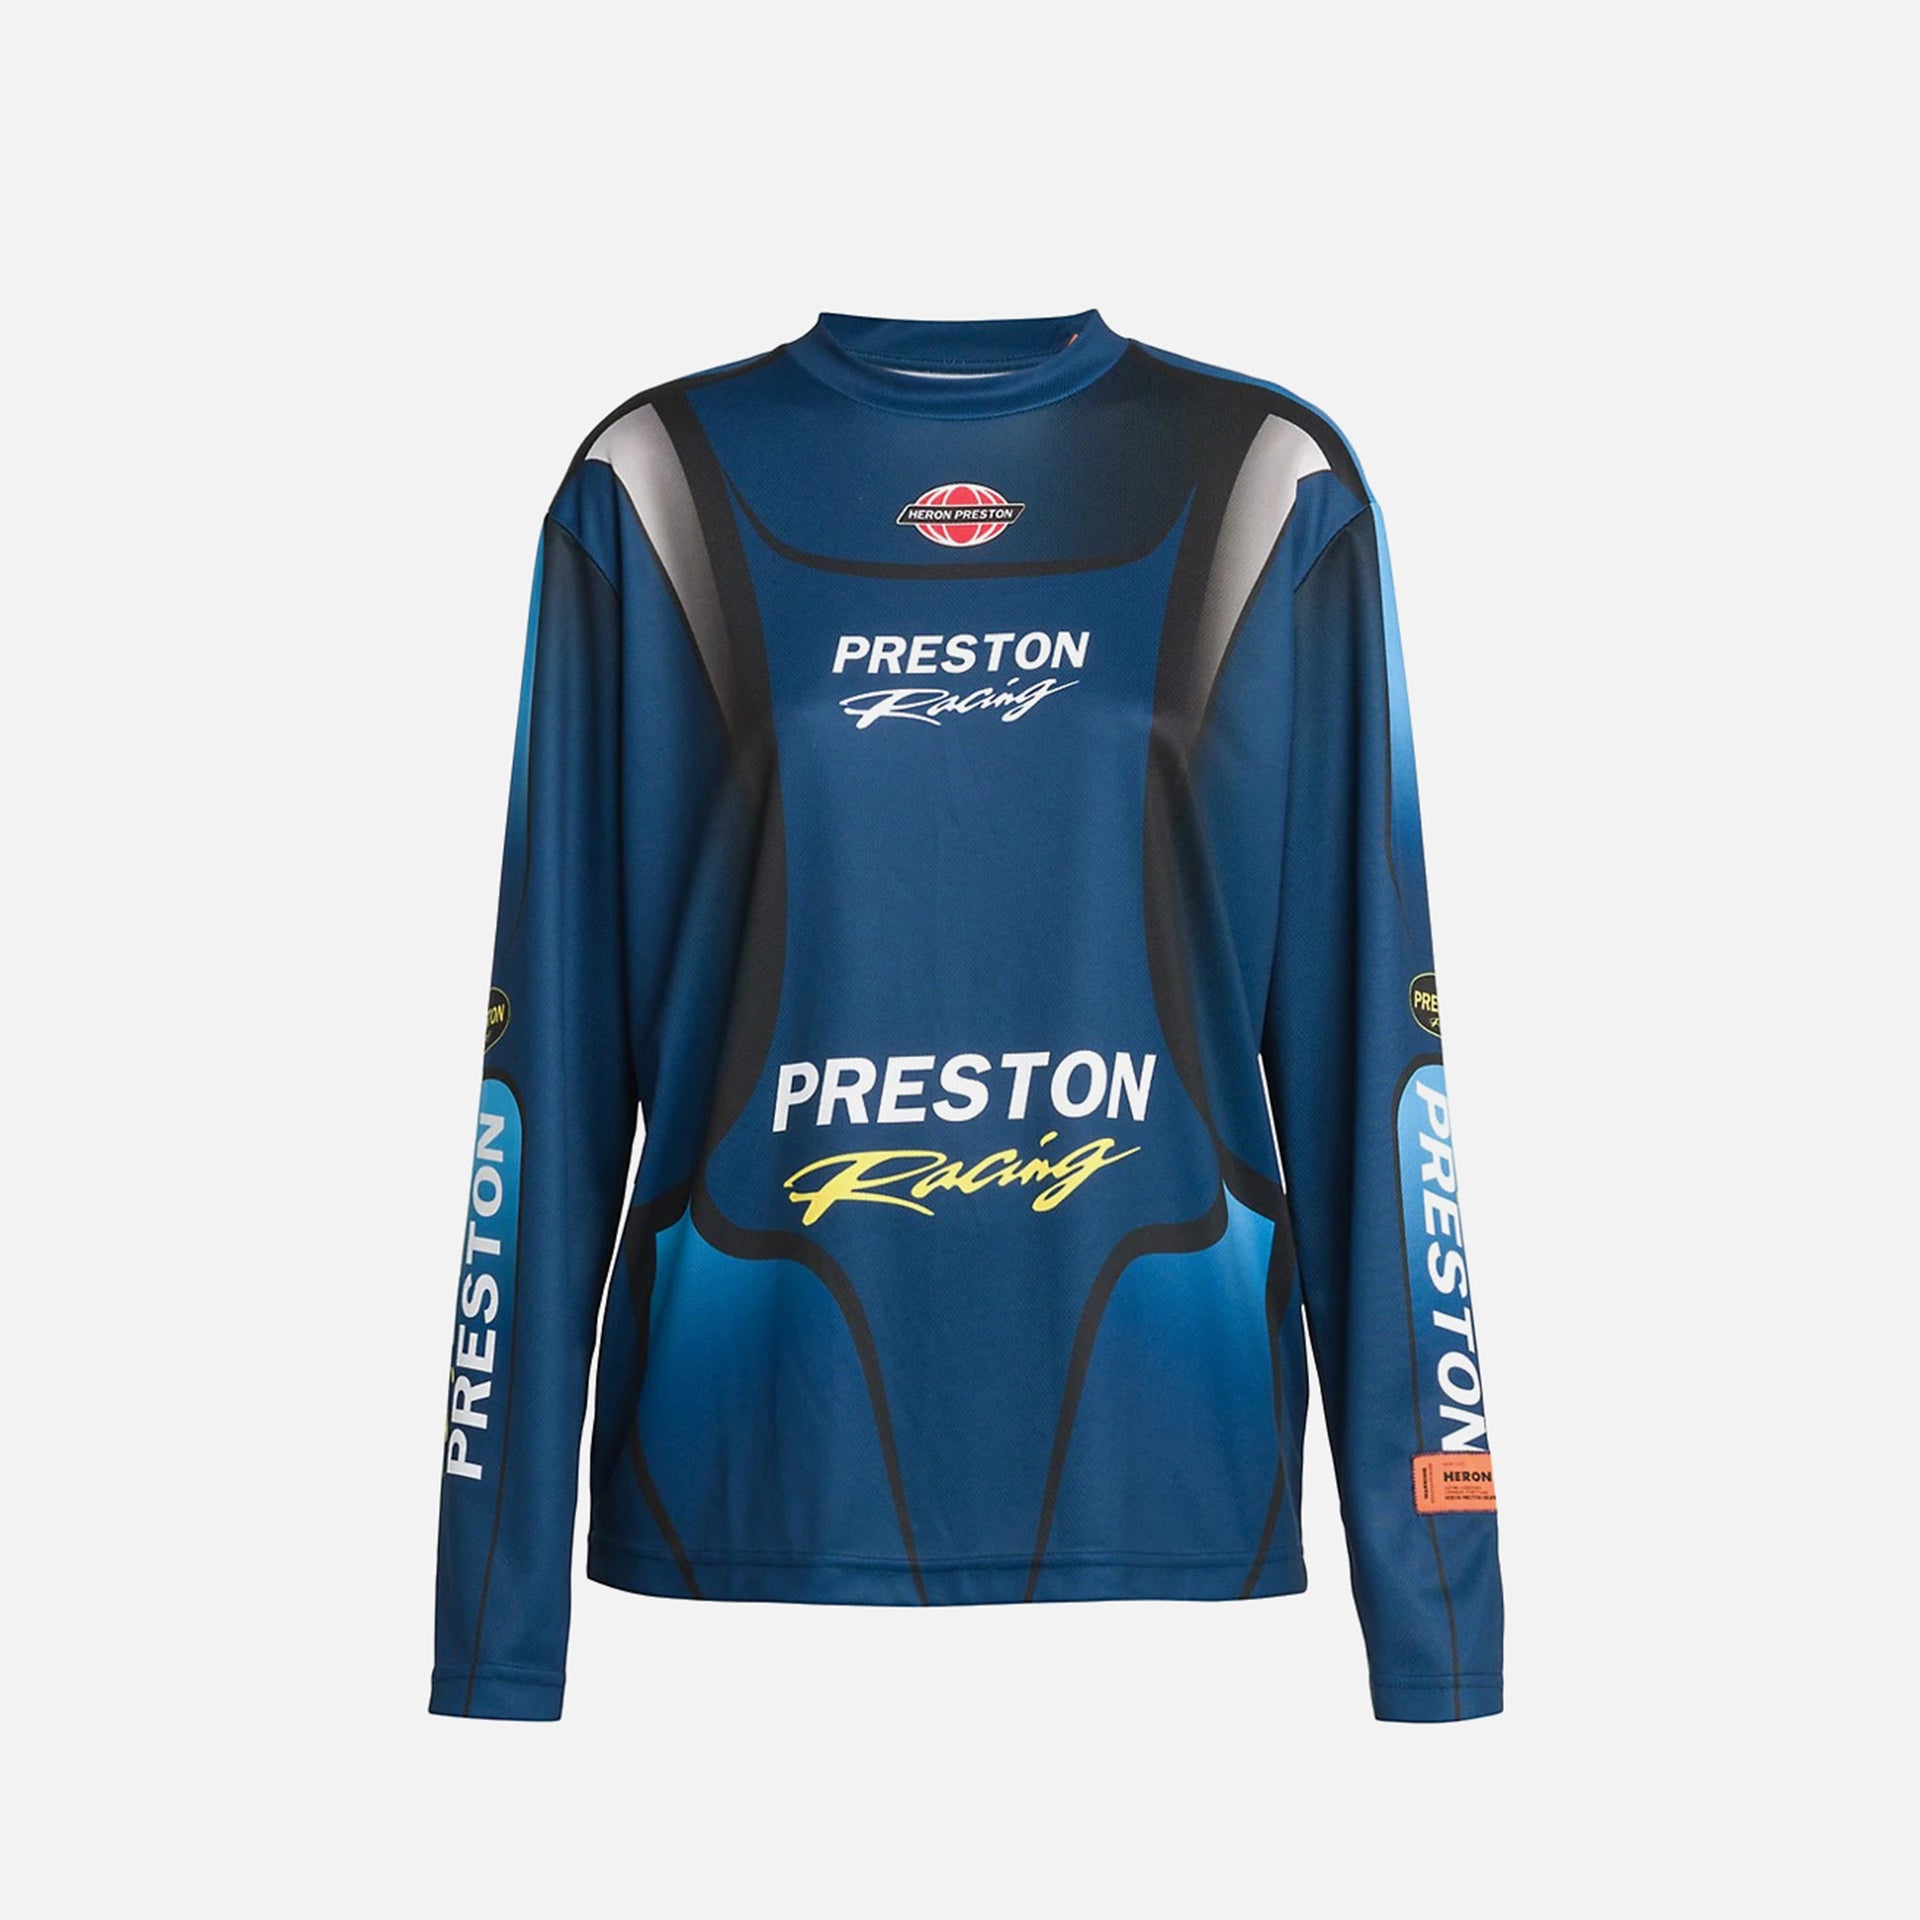 Heron Preston Racing Dry Fit Long Sleeve Tee - Navy Light